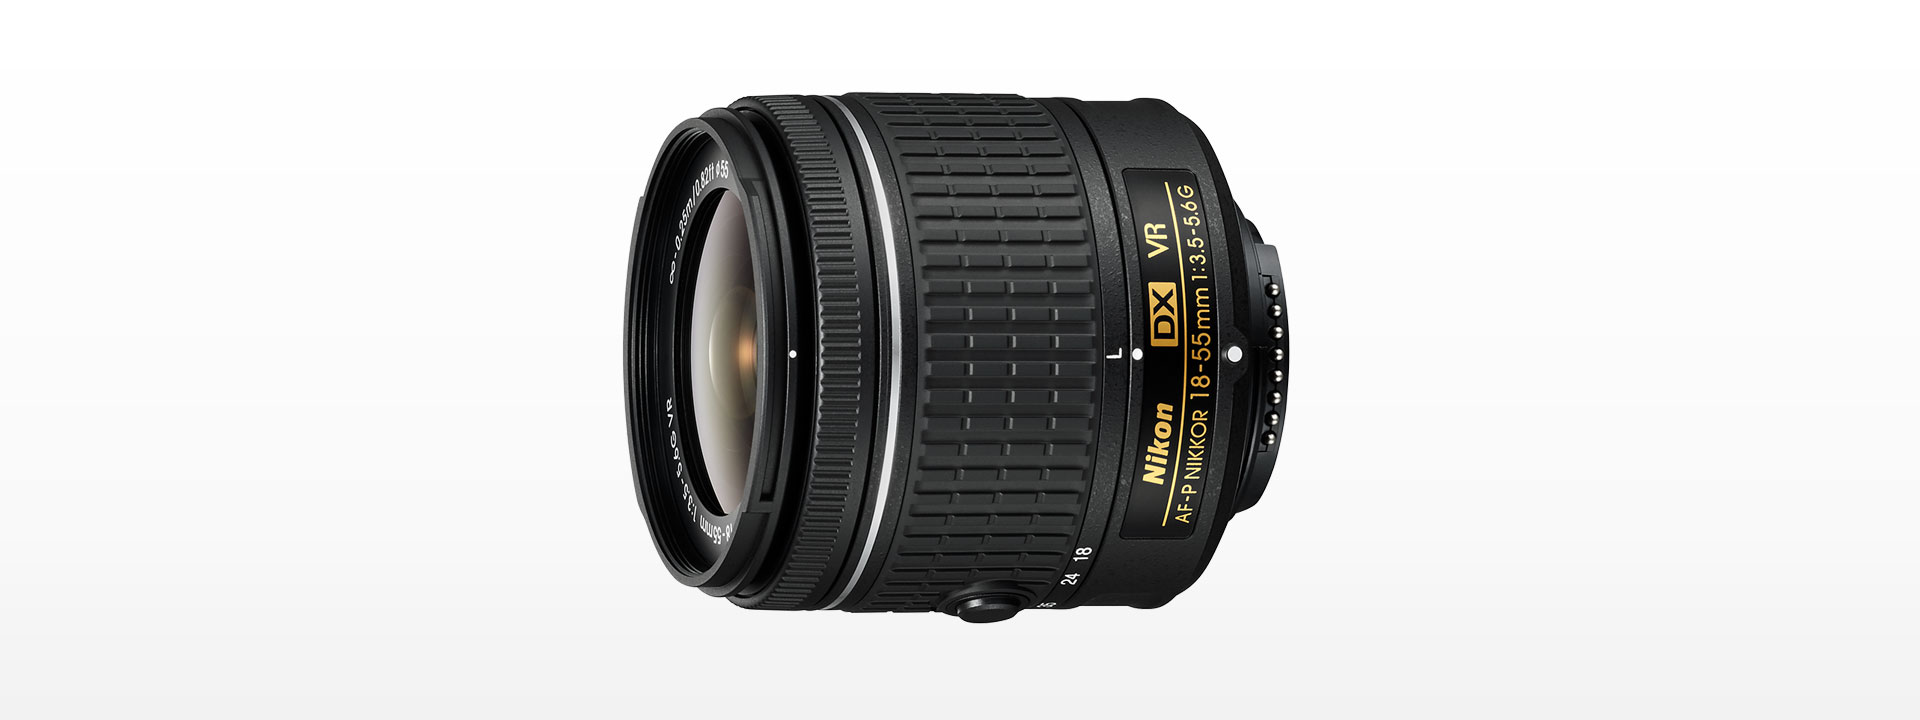 Nikon AF-S DX NIKKOR 18-55mm 3.5-5.6G VR 最新入荷 - レンズ(ズーム)